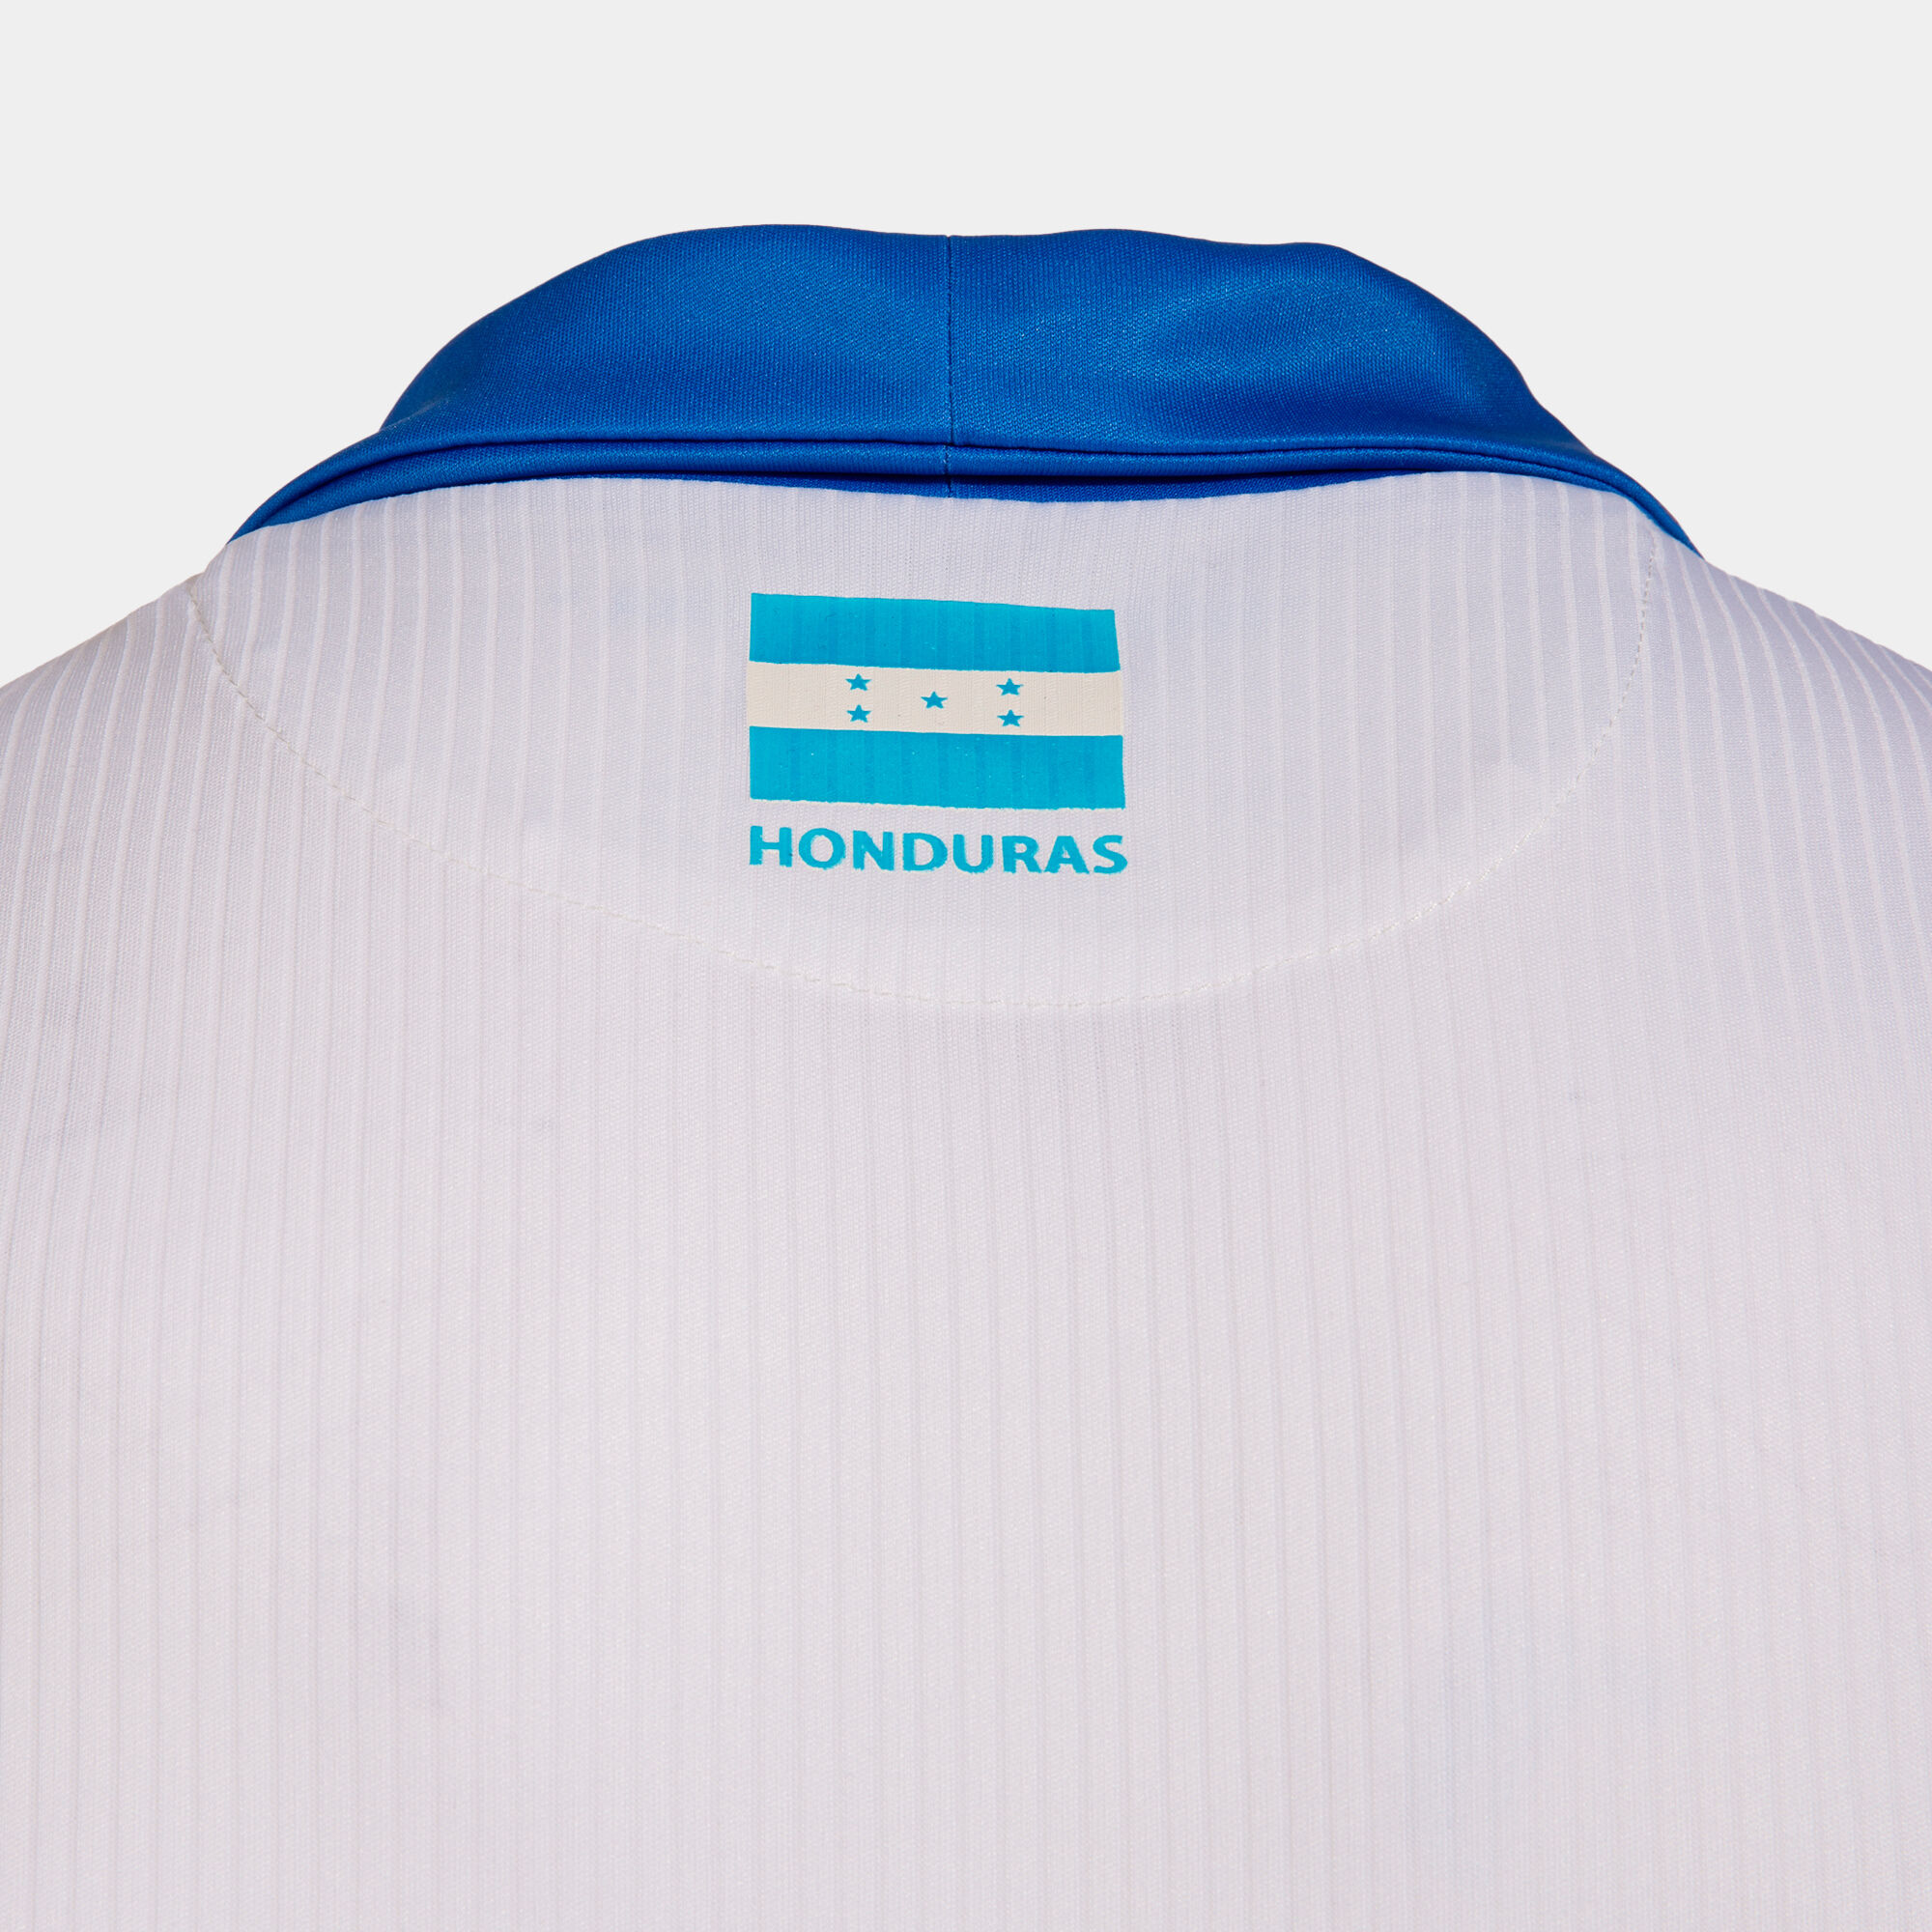 new honduras soccer jersey